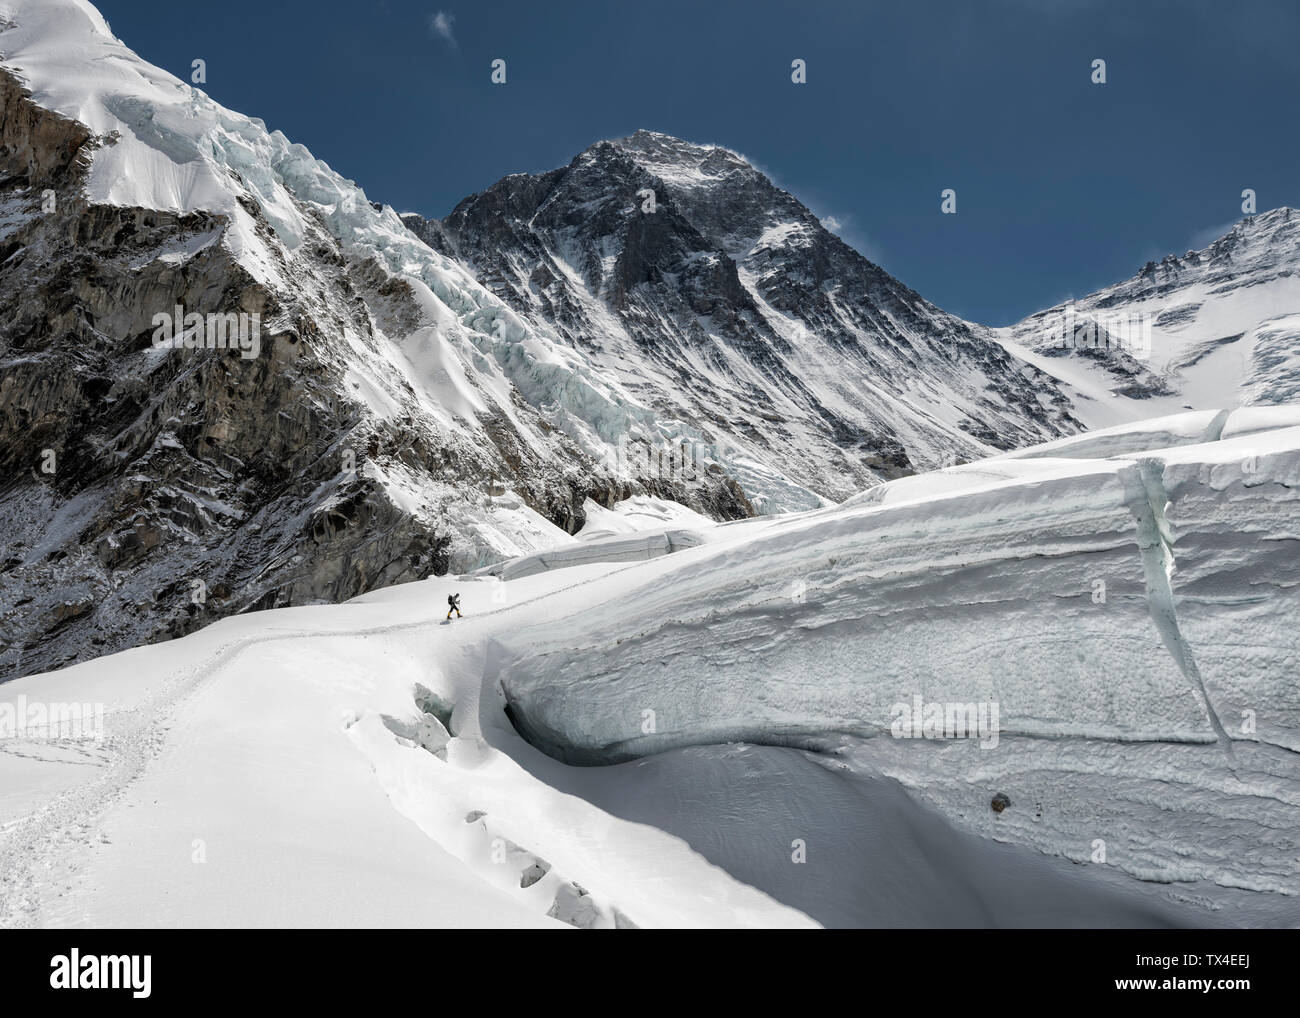 Il Nepal, Solo Khumbu, Everest, alpinista presso la Western Cwm Foto Stock